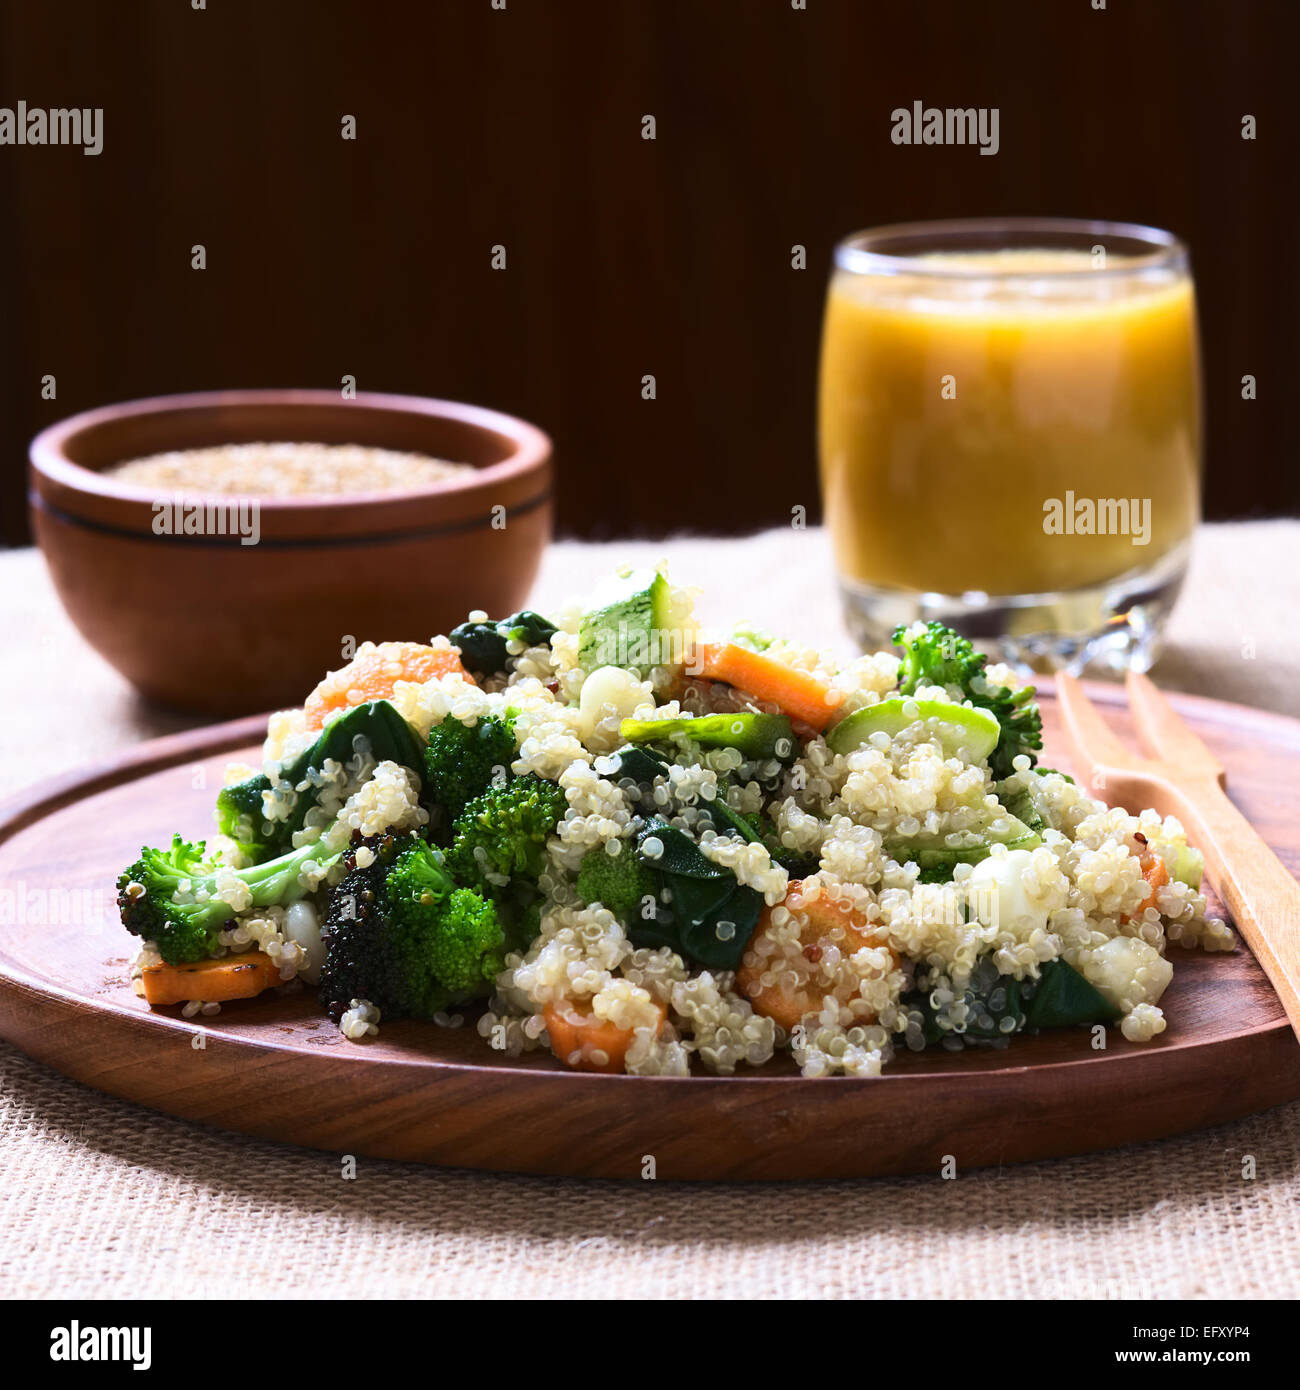 Cotto bianco semi di quinoa con verdure fritte (carota, broccoli, spinaci, zucchine, mais) sul piatto di legno Foto Stock